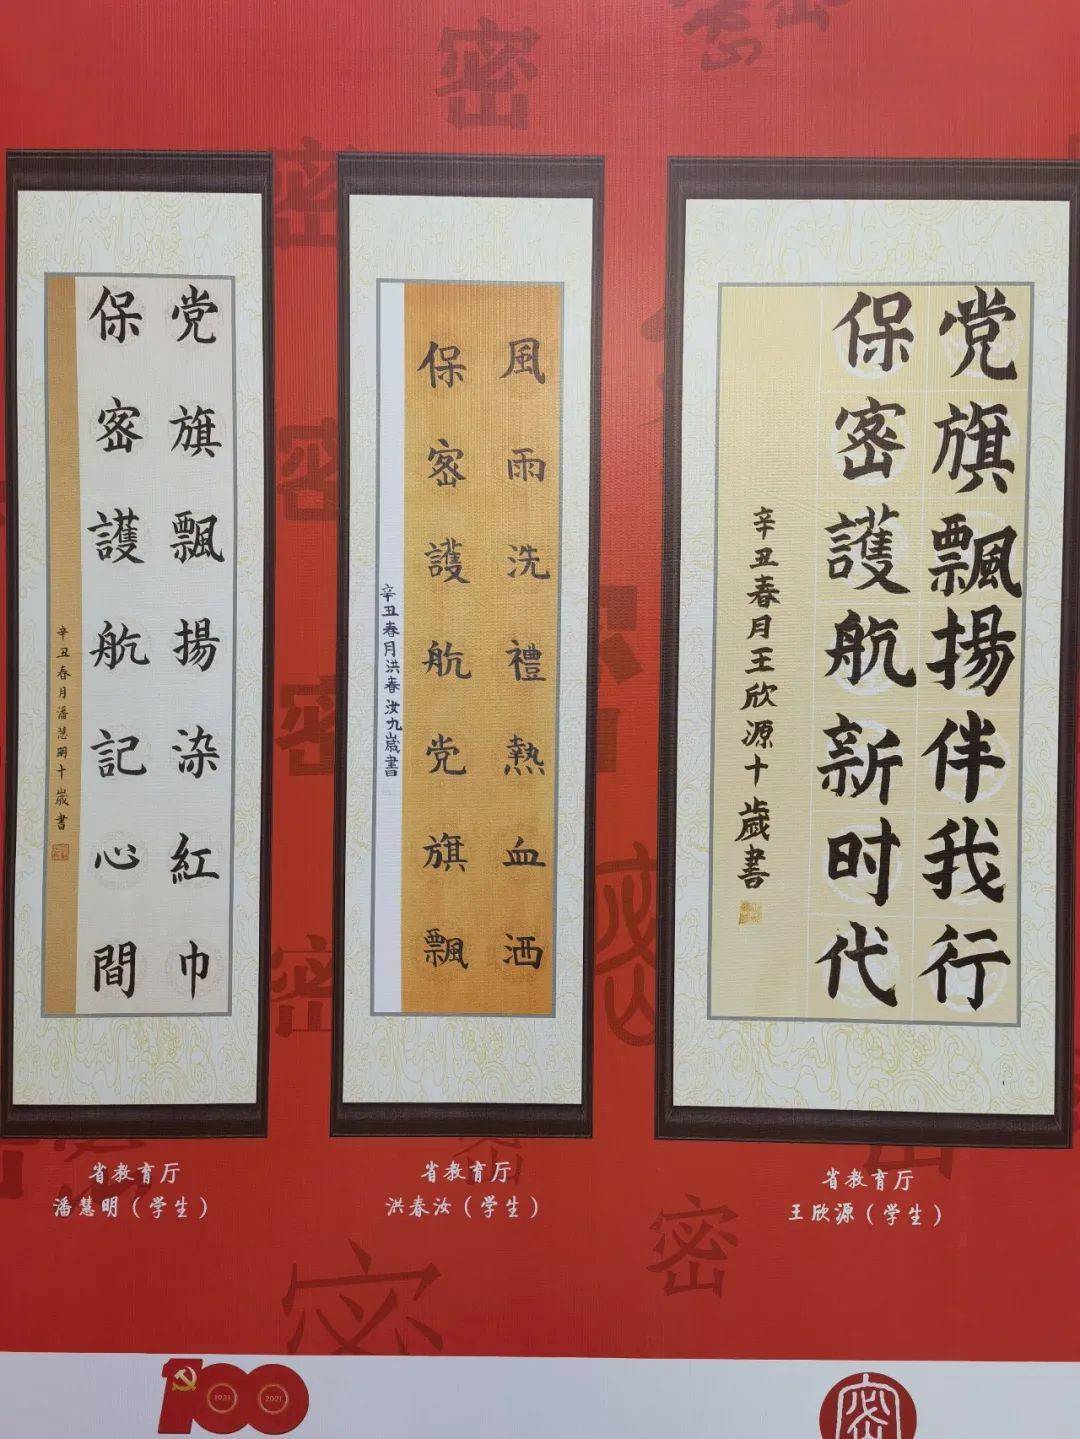 这些海南师生的作品在庆祝中国共产党成立100周年保密